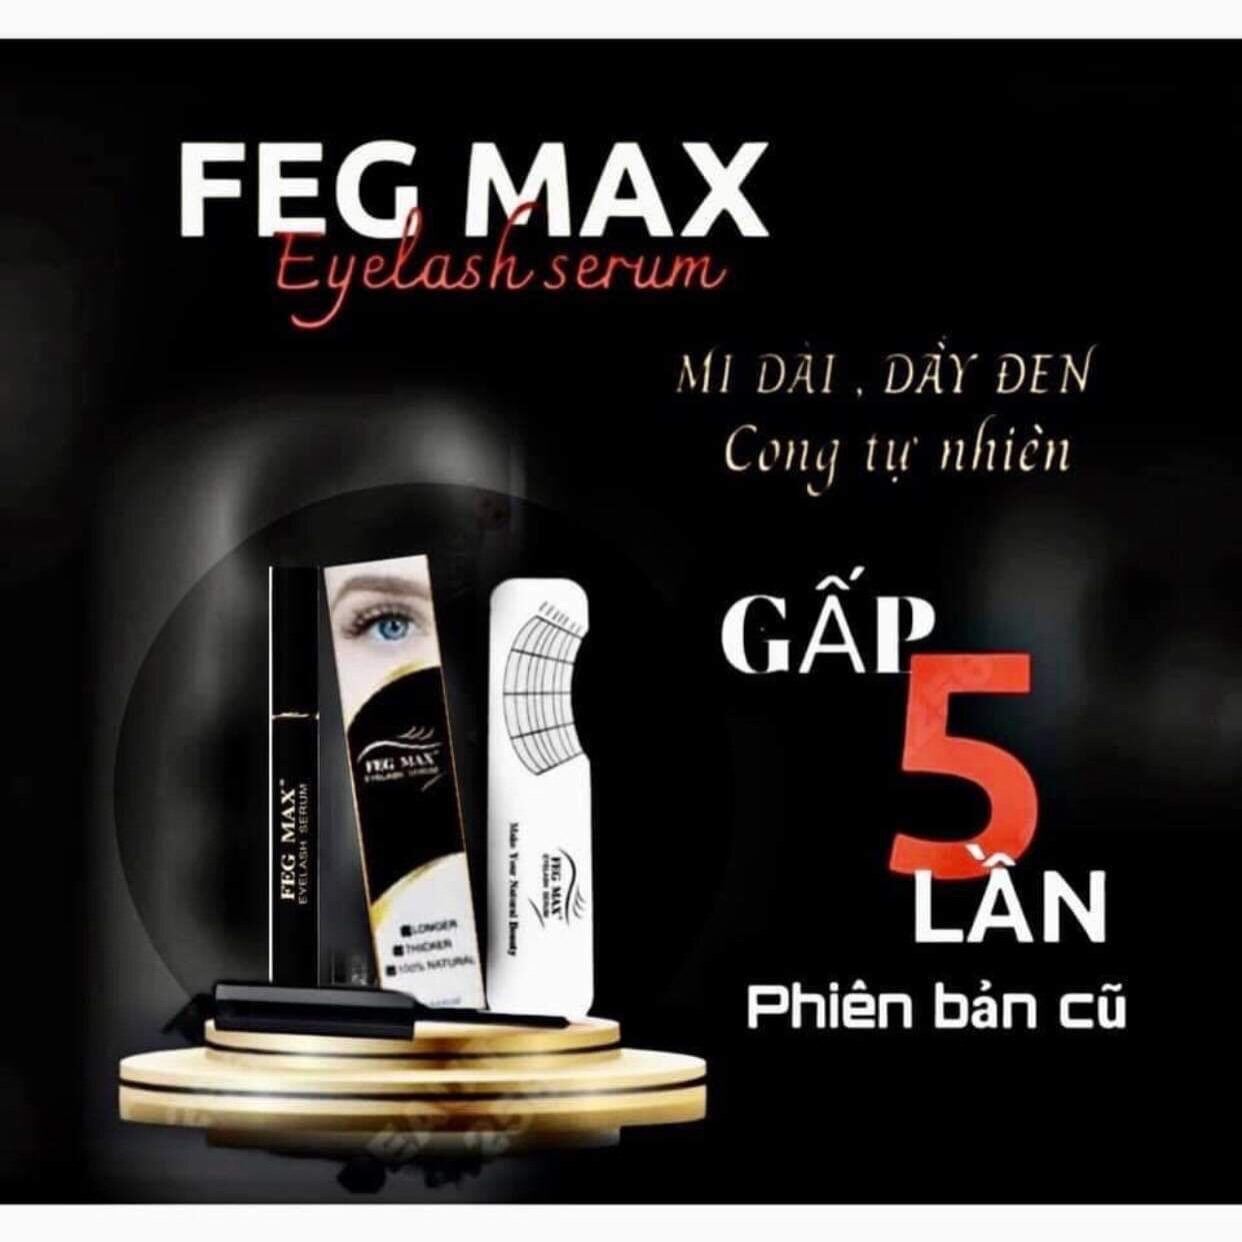 Dưỡng mi FEG MAX phiên bản cao cấp dài hơn gấp 5 lần phiên bản cũ